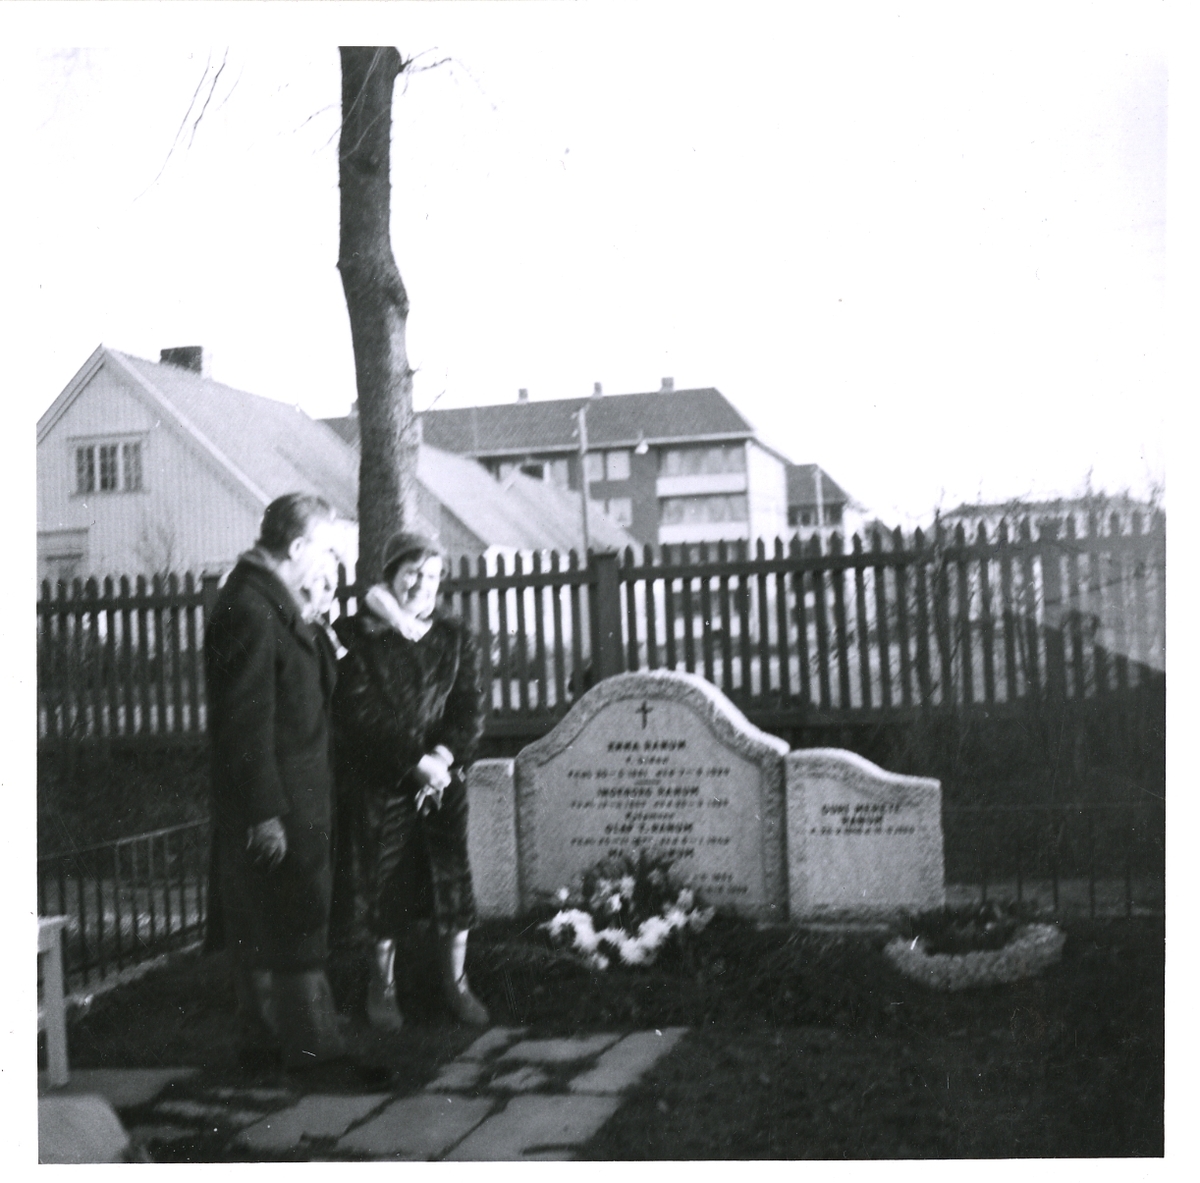 Ved familiegraven i anledning butikkens 60-års jubileum. 08.12.1959.
Fra venstre Gundrun, Olaf og Ingeborg.